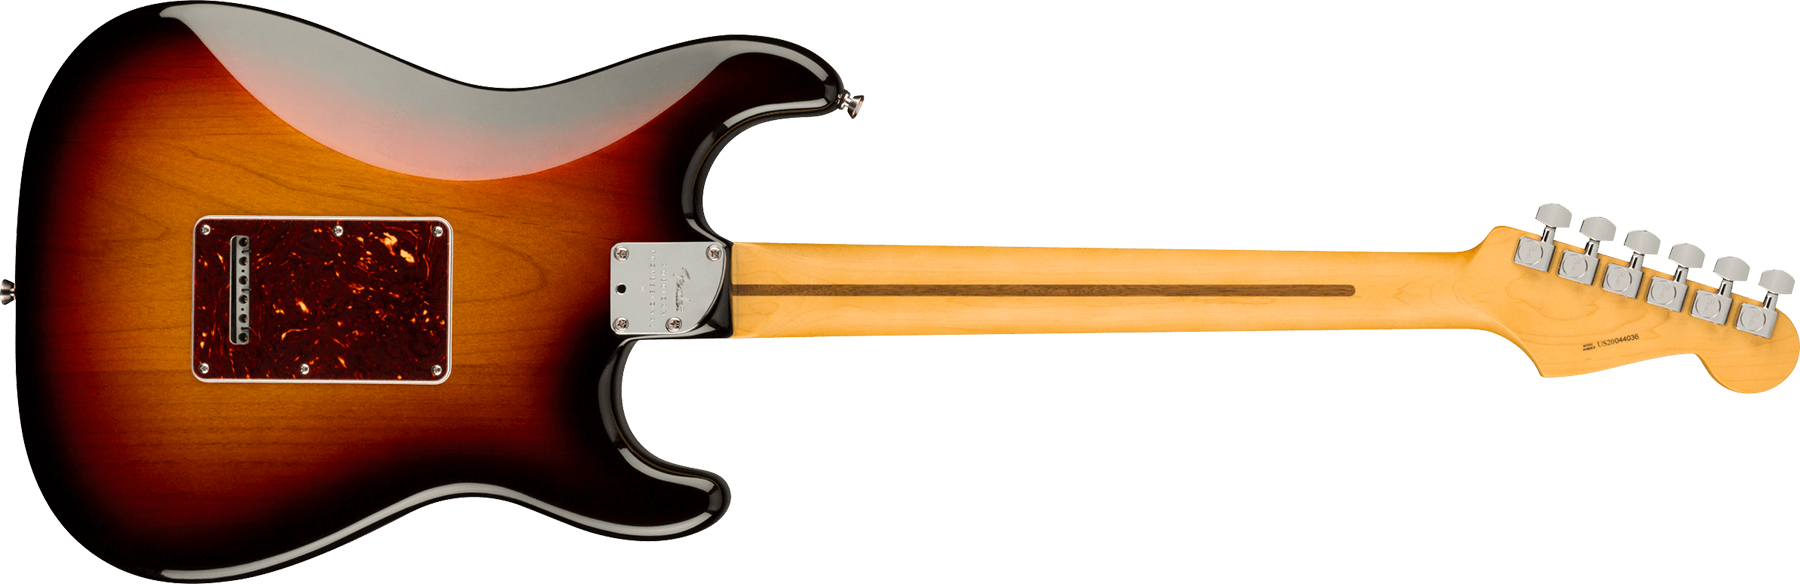 Fender Strat American Professional Ii Lh Gaucher Usa Rw - 3-color Sunburst - Linkshandige elektrische gitaar - Variation 1